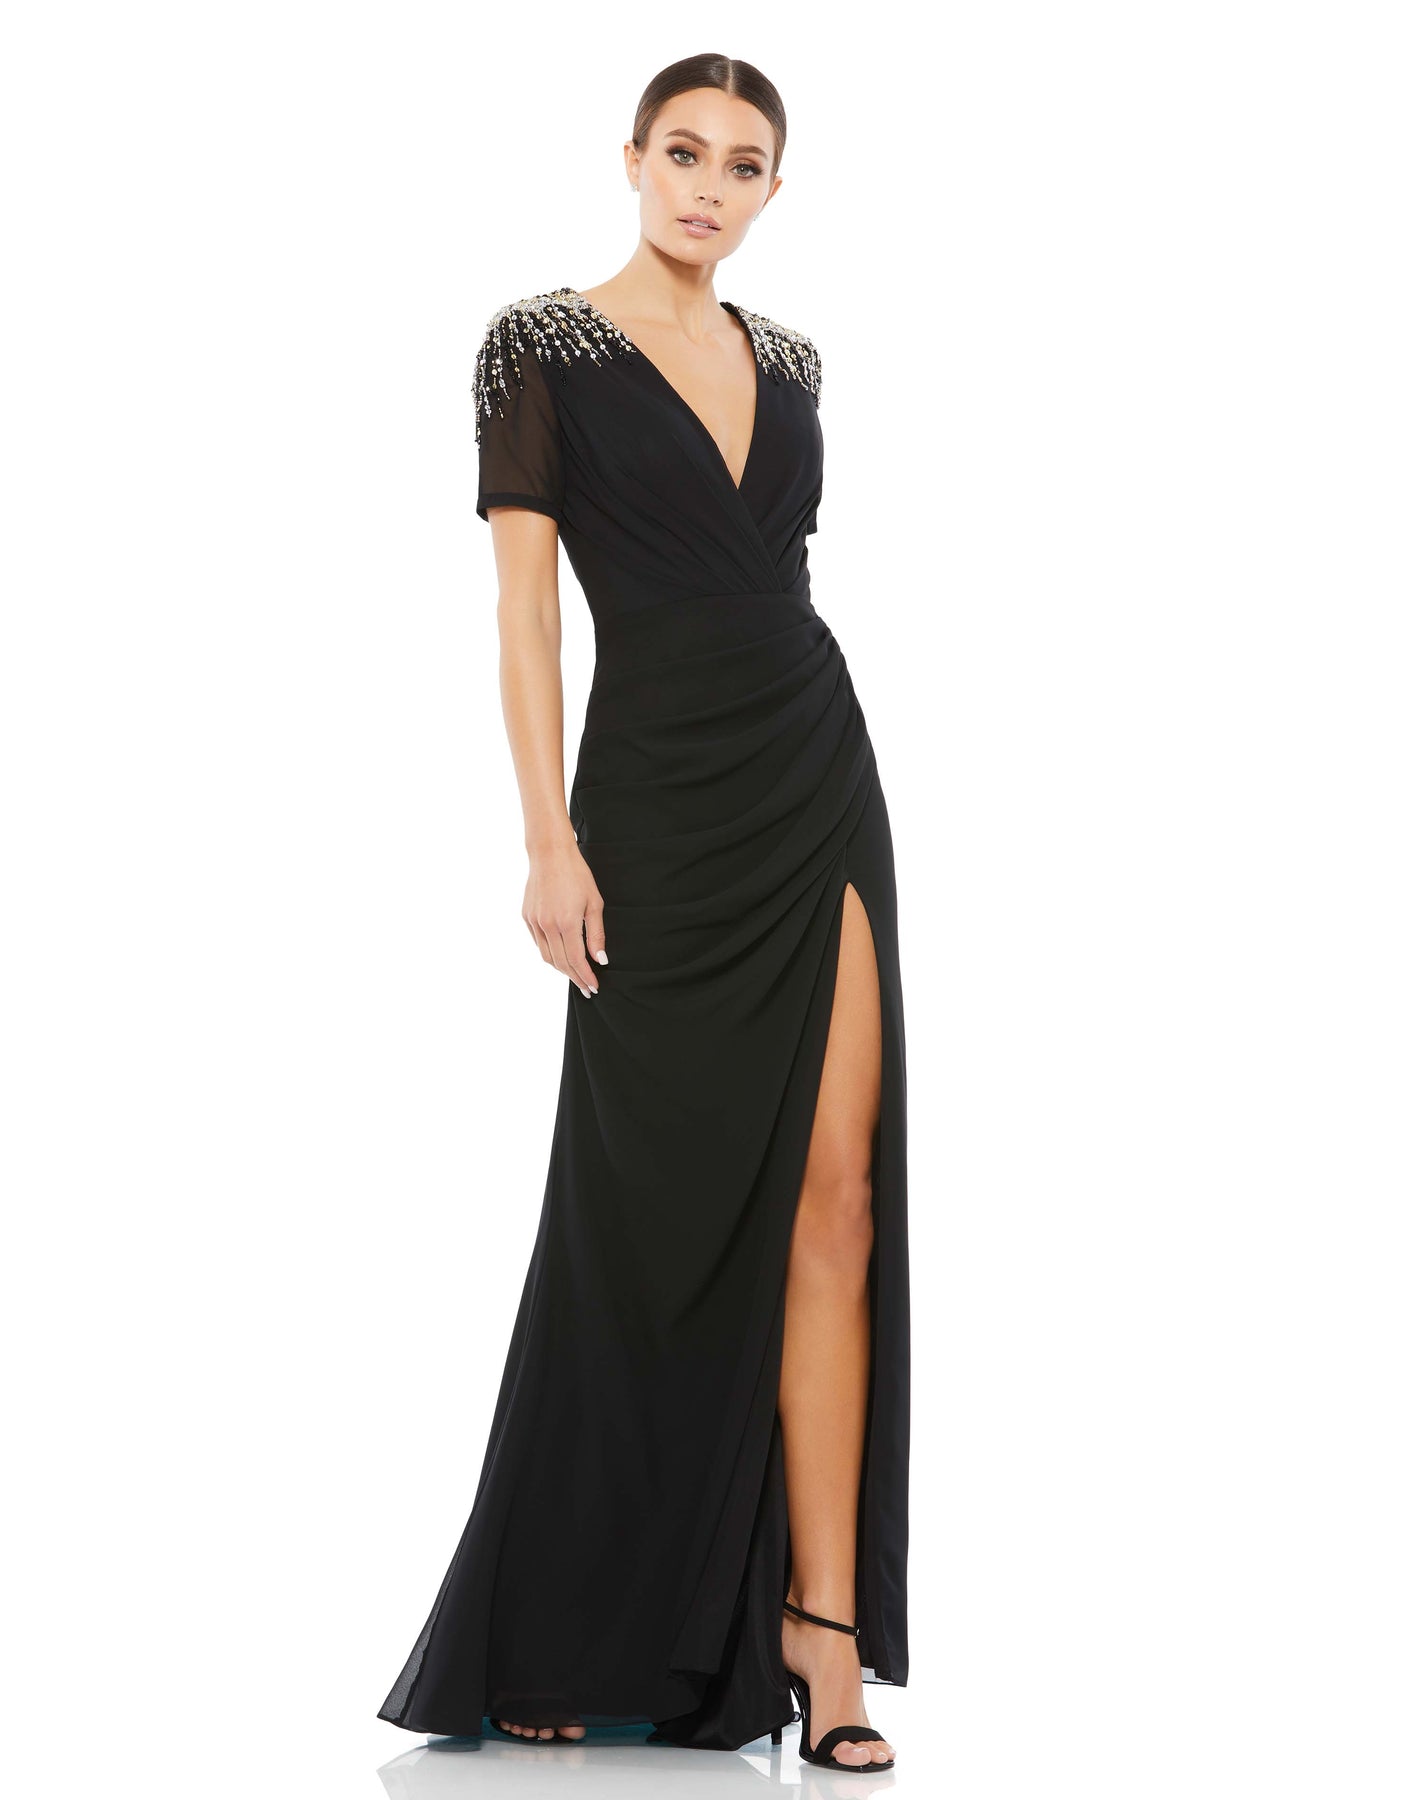 Sequined Embellished Shoulder Evening Gown – Mac Duggal